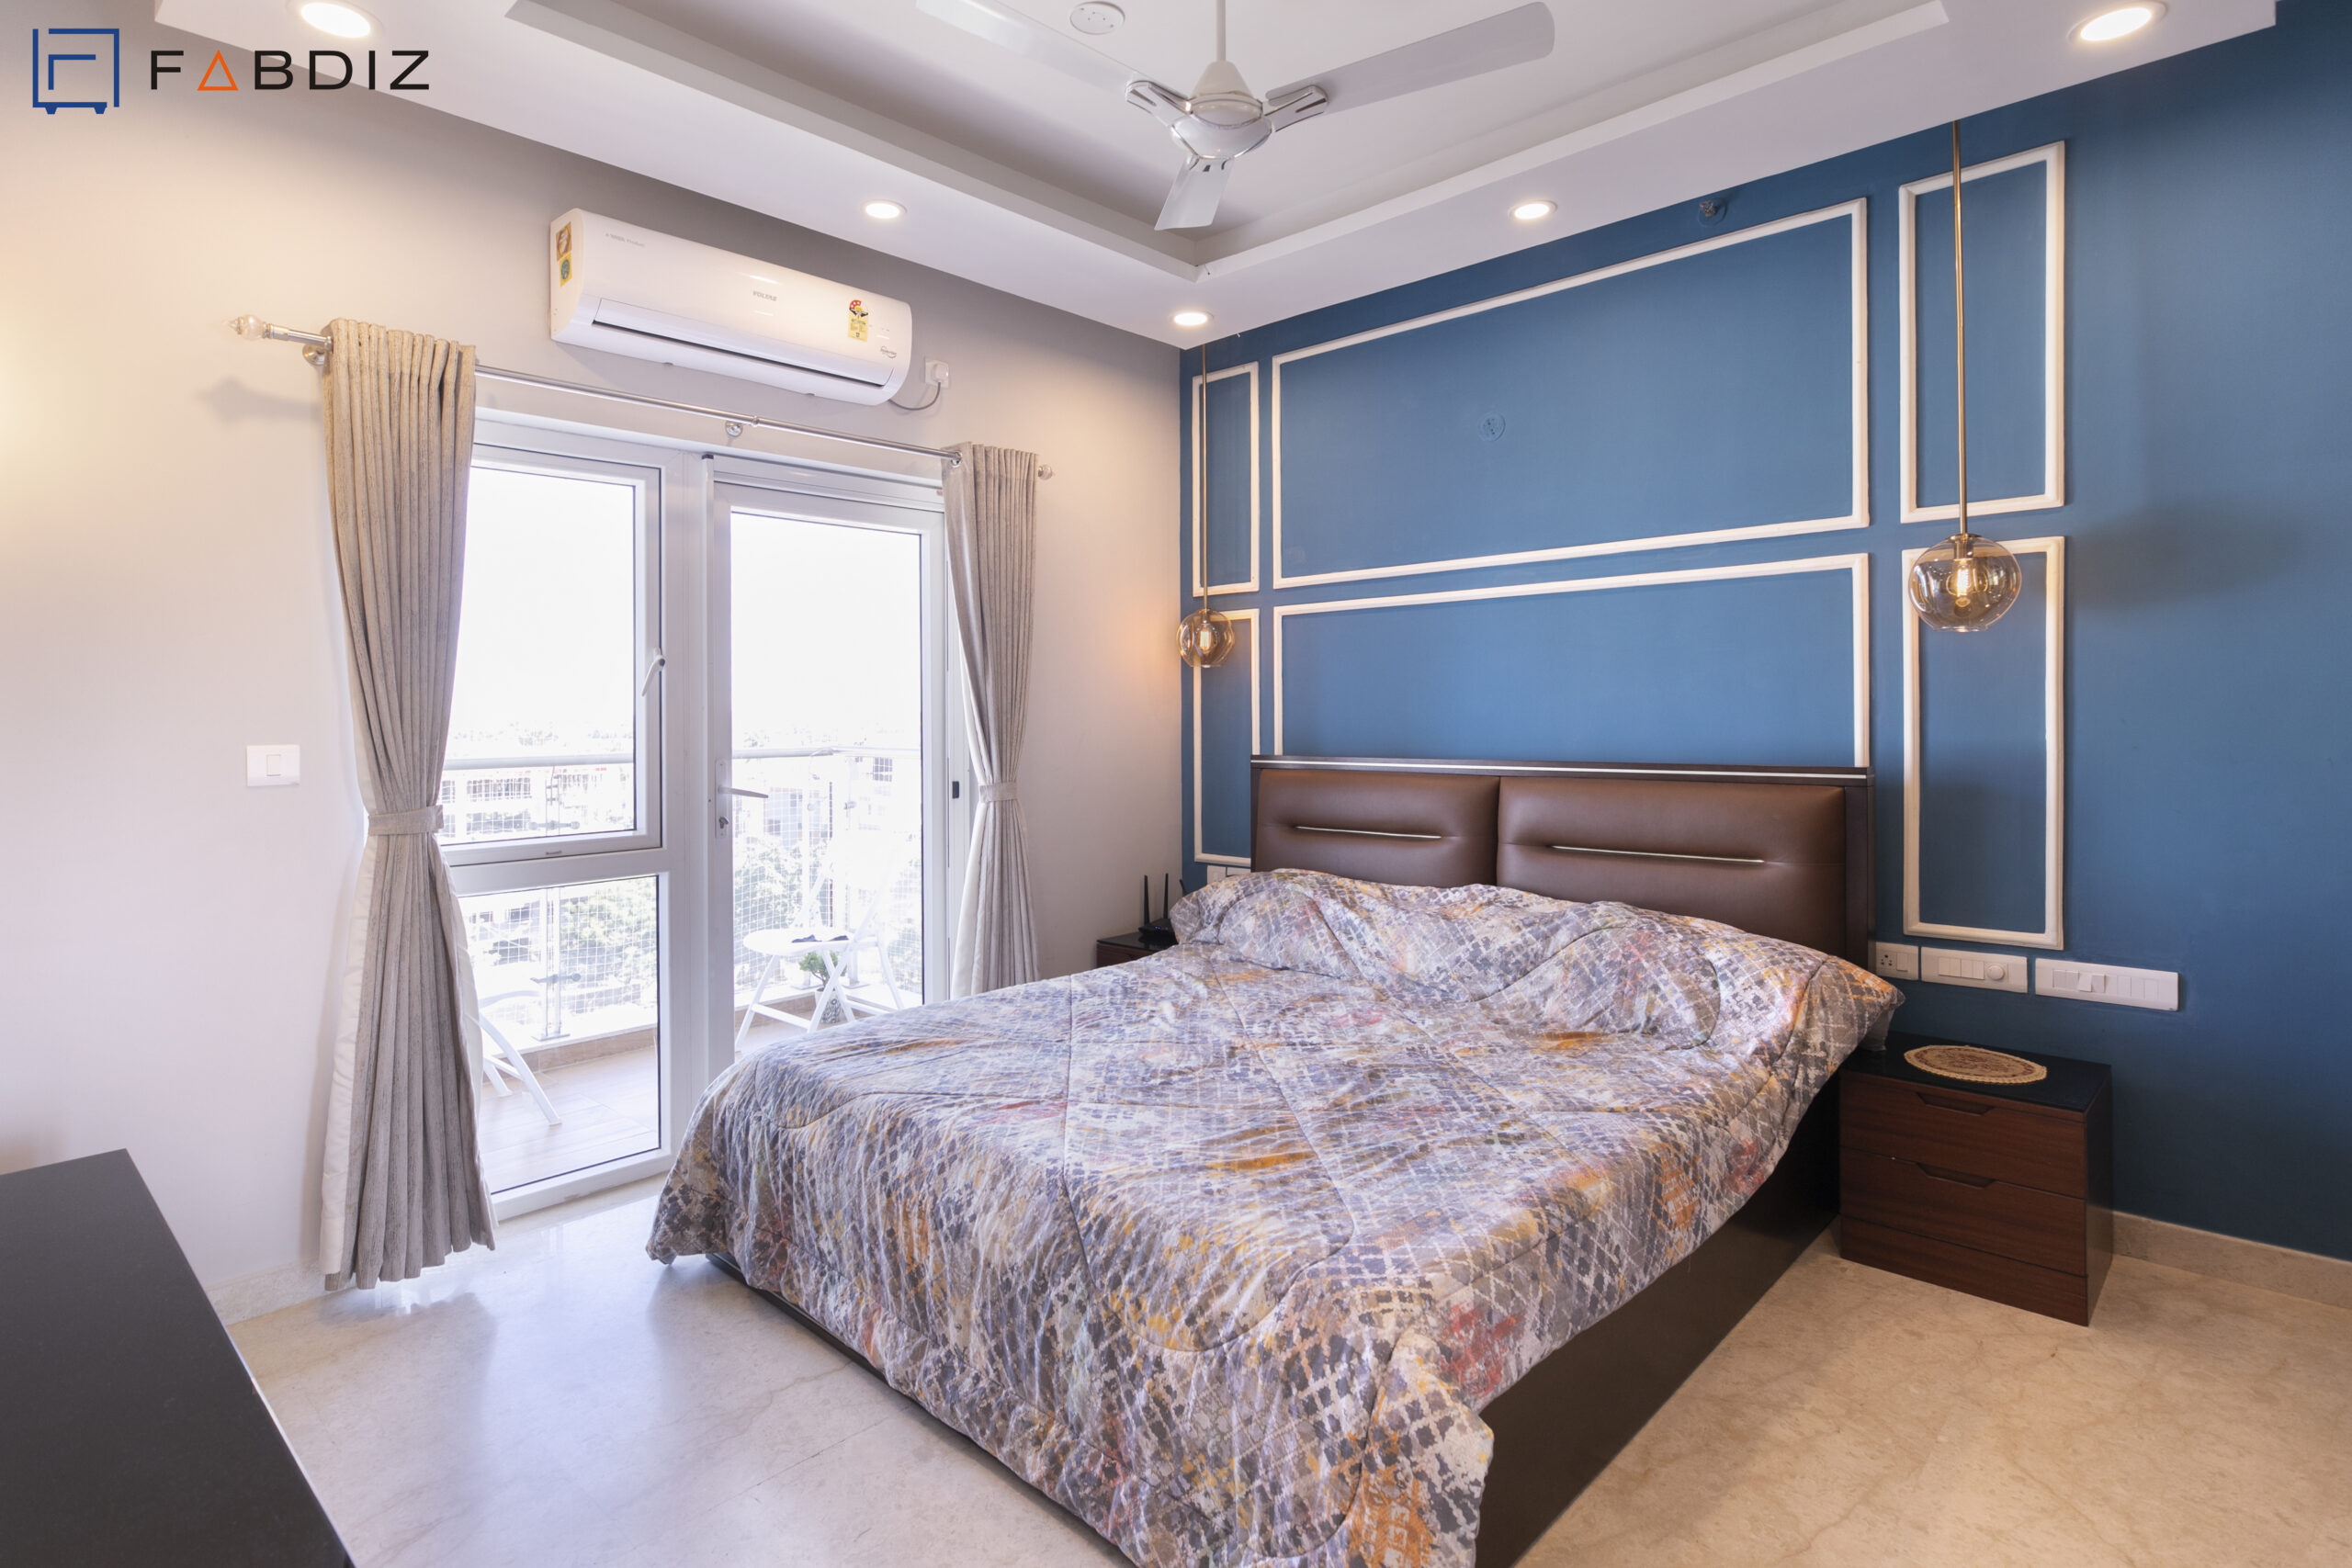 Bedroom design by FABDIZ interior designers in Bangalore